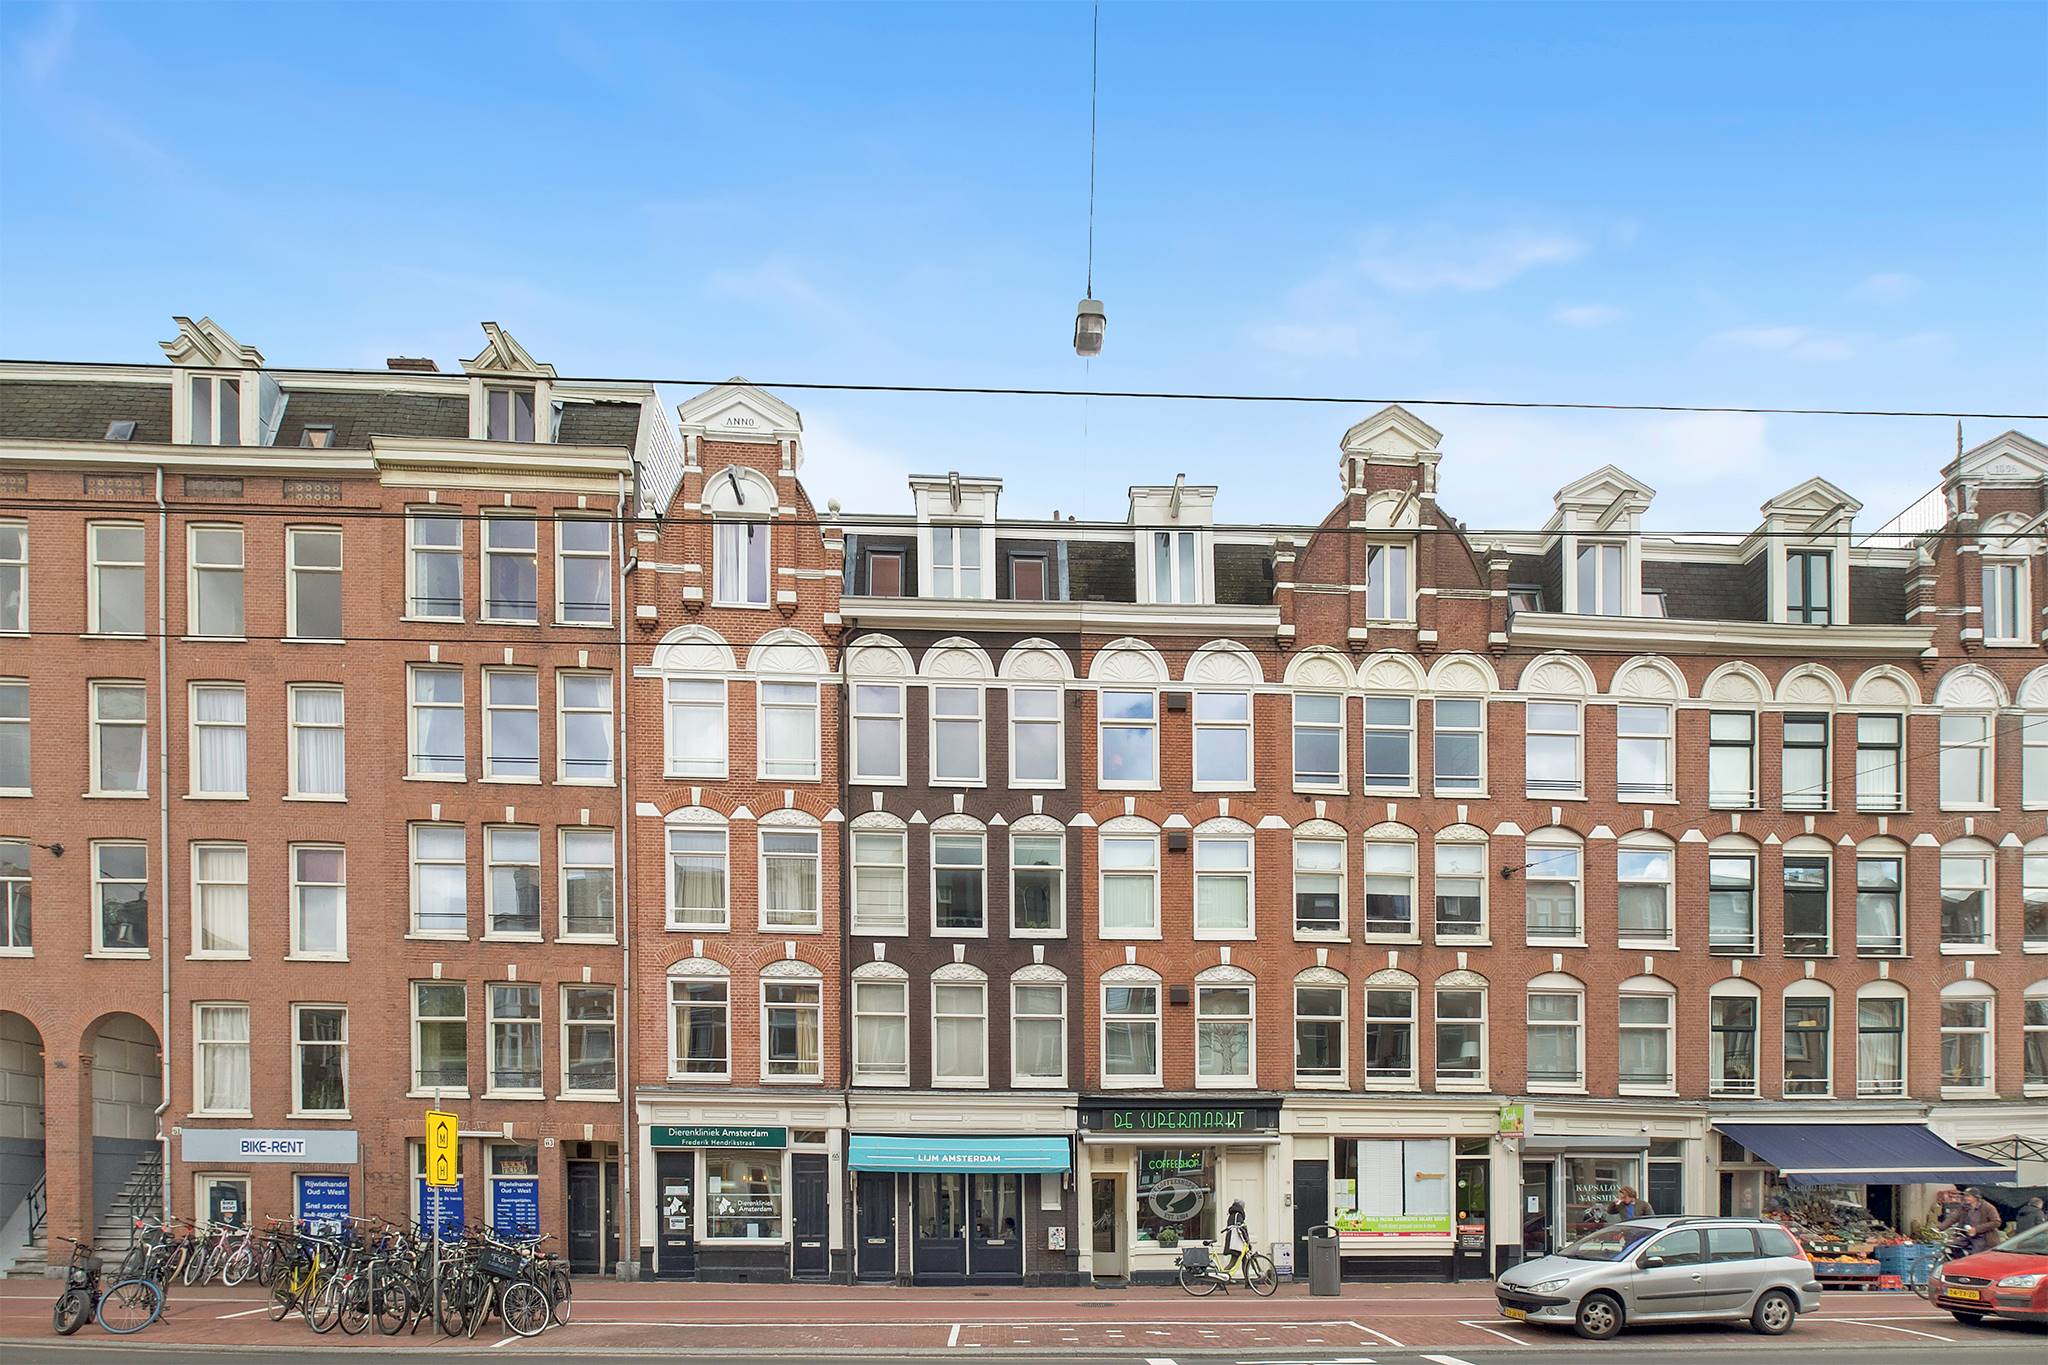 Frederik Hendrikstraat Amsterdam